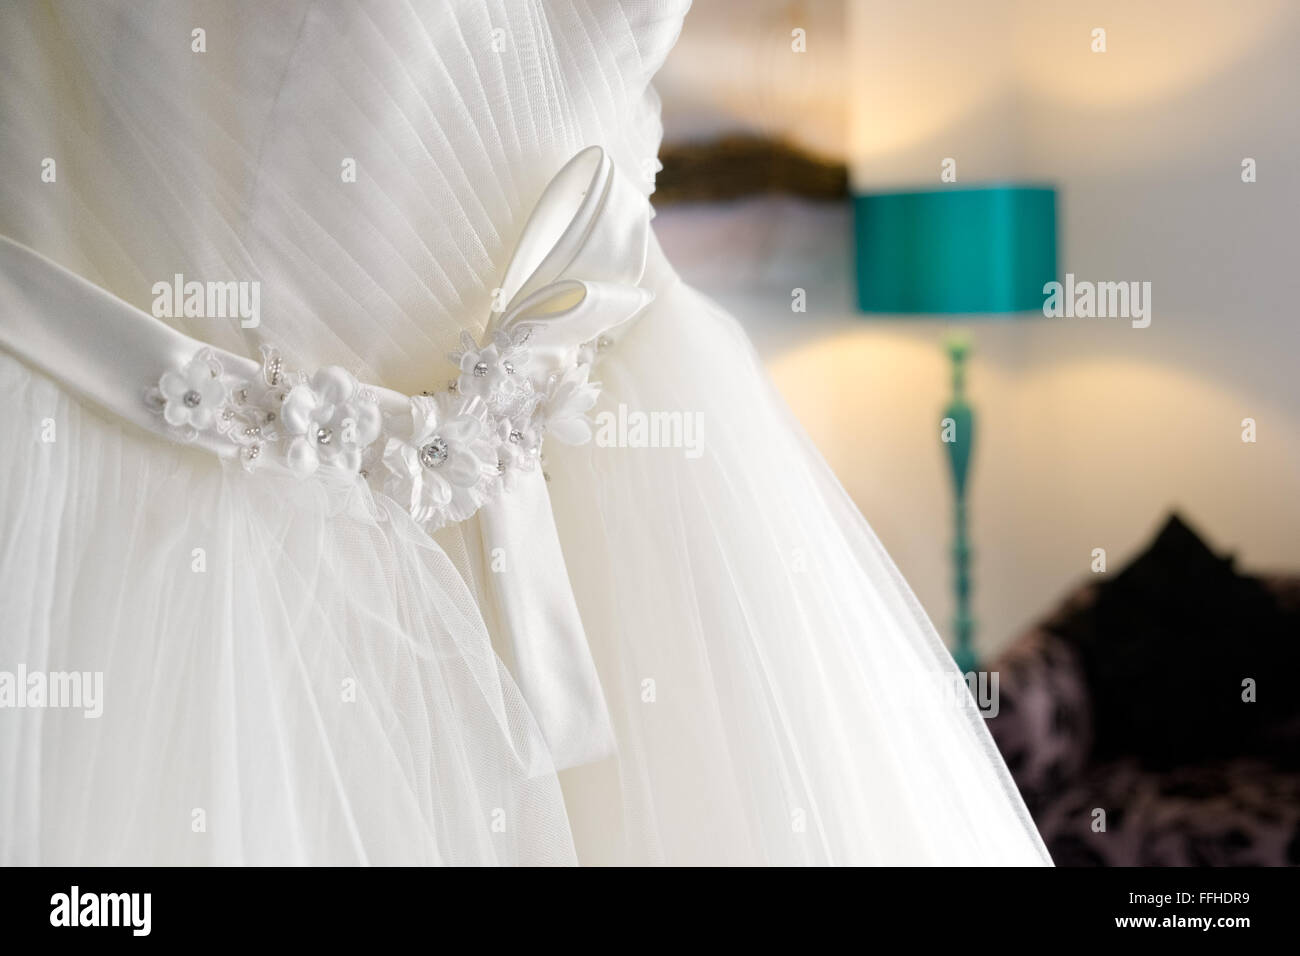 Une robe de mariée blanche traditionnelle suspendu dans une chambre en attente d'une épouse à mettre sur Banque D'Images